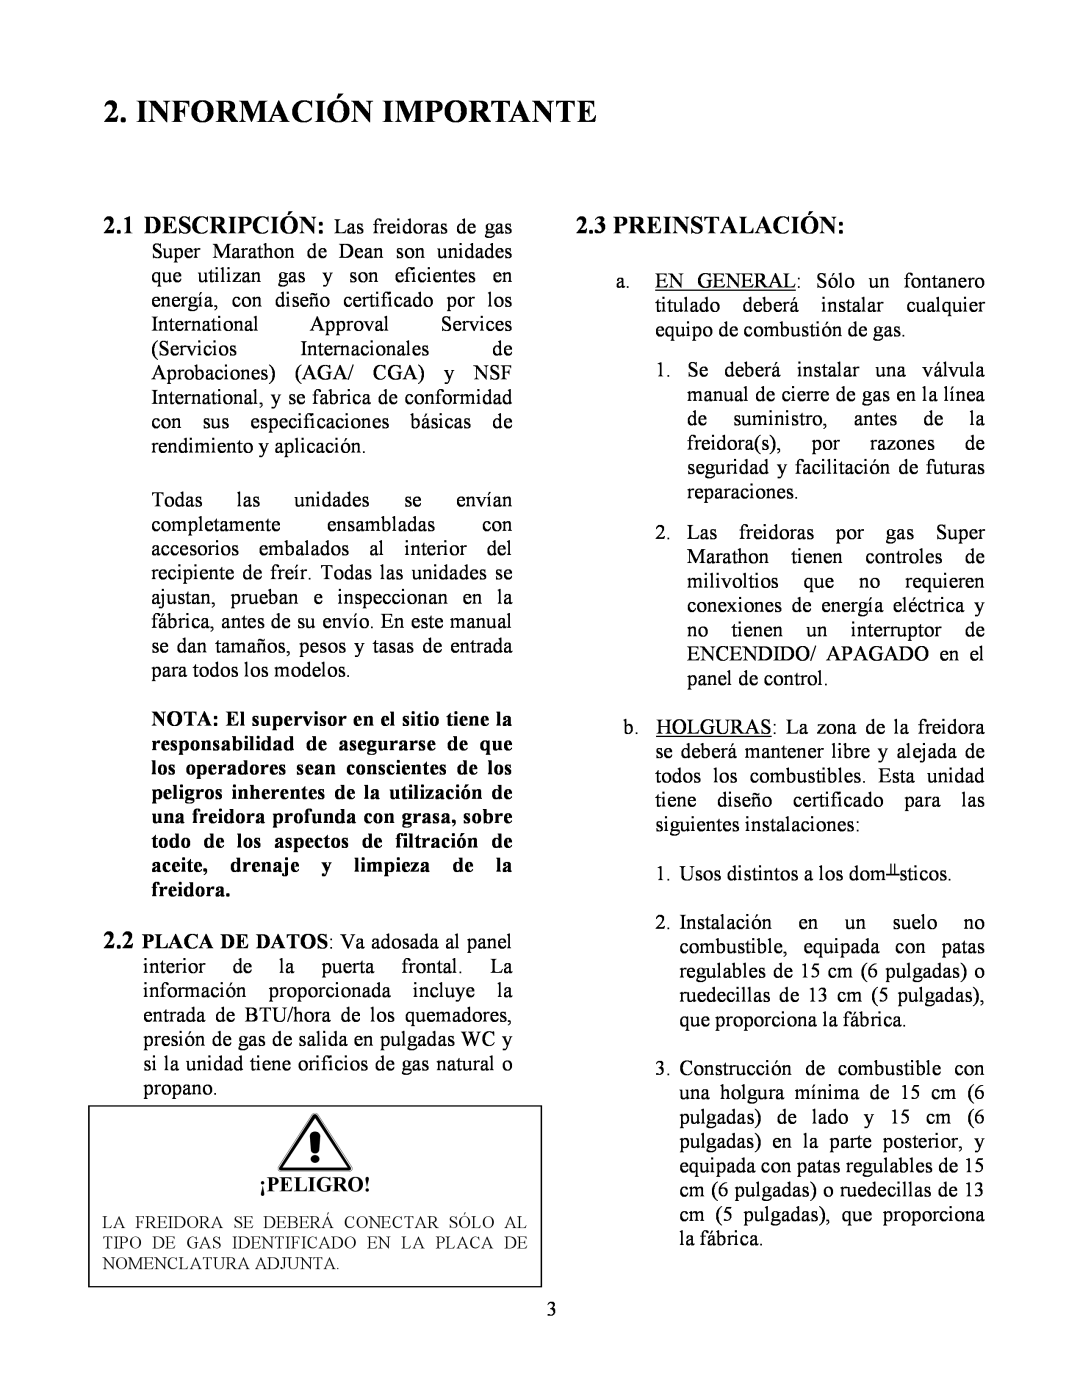 Frymaster Y SM80 manual Información Importante, 2.3PREINSTALACIÓN, ¡Peligro 